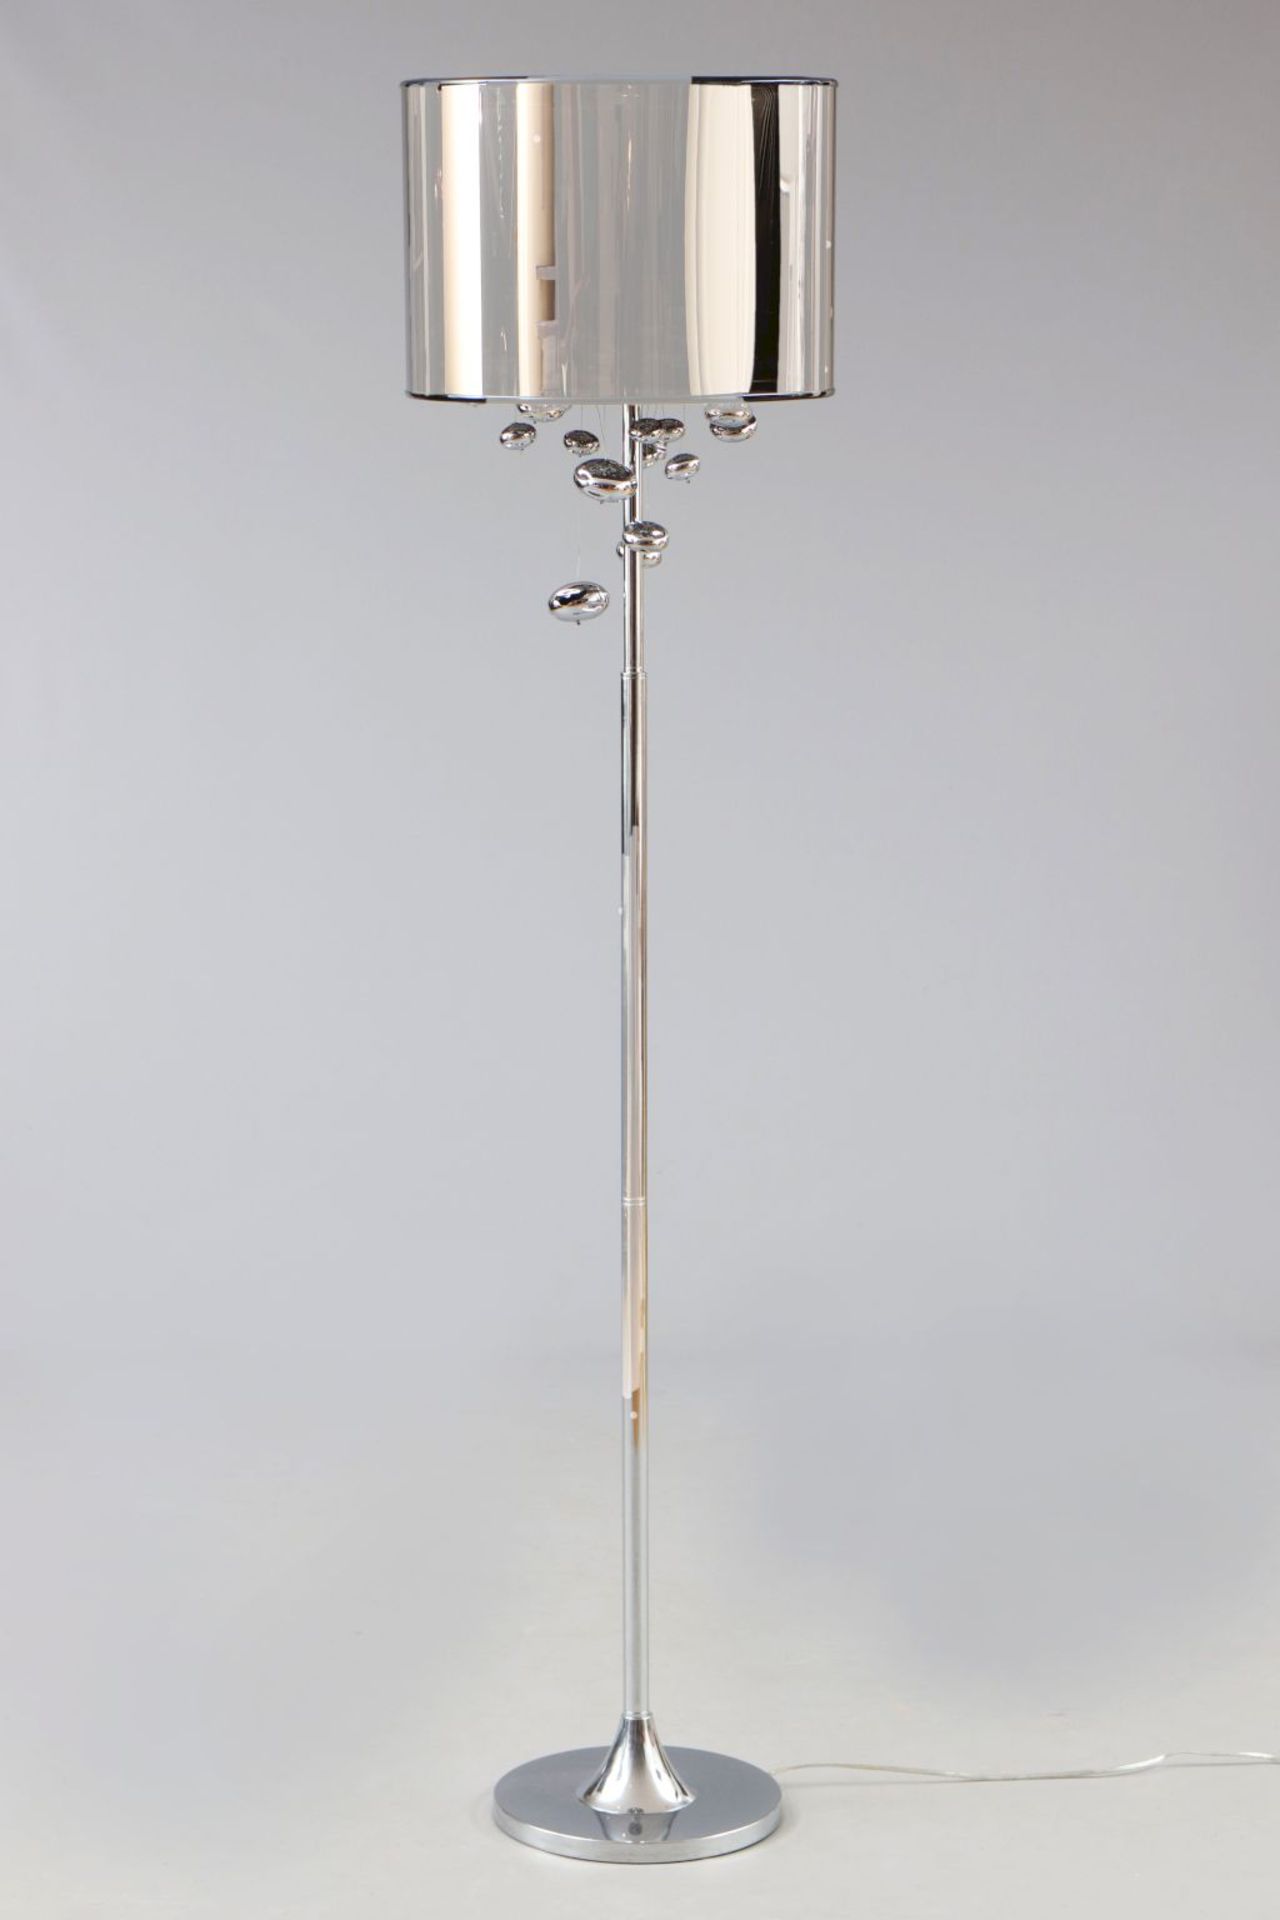 StehlampeSäulenstand mit runder Bodenplatte, verchromtes Metall, bronzefarben getönter, trans